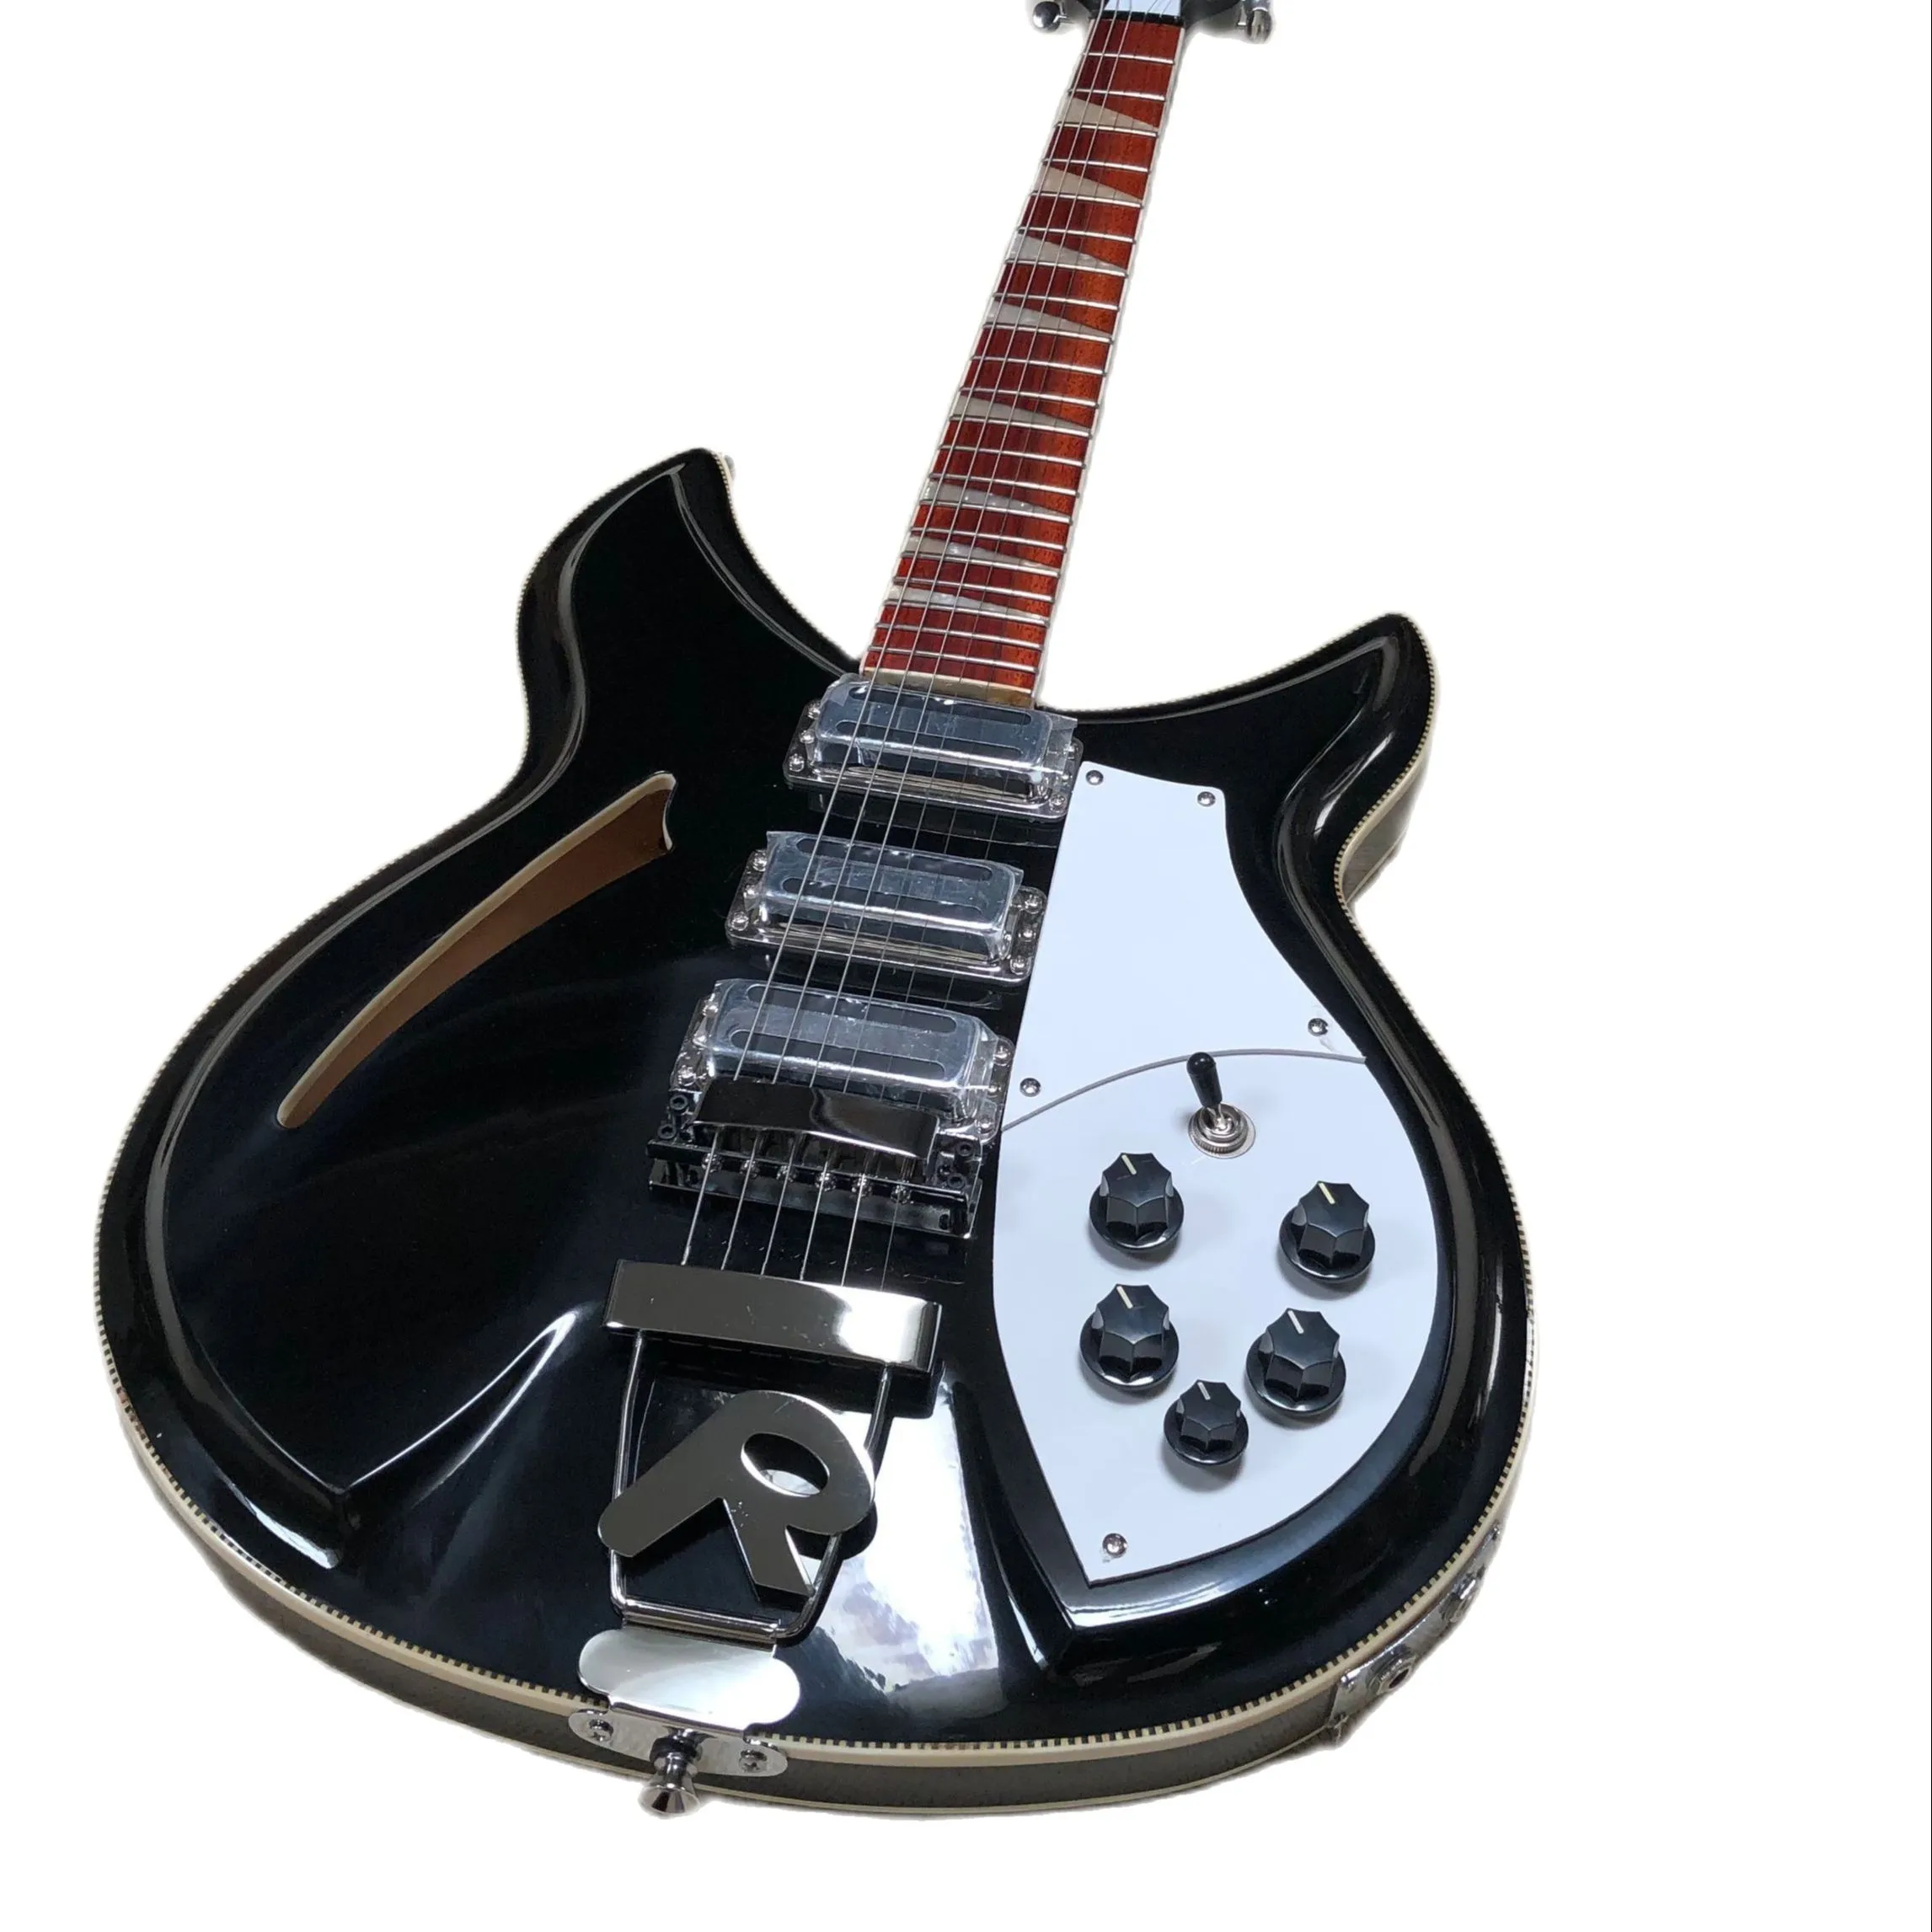 RIKEN - 6 - String elektrisk gitarr, hög kvalitet, 381, vattendroppe hål ihålig, svart färg, gratis leverans